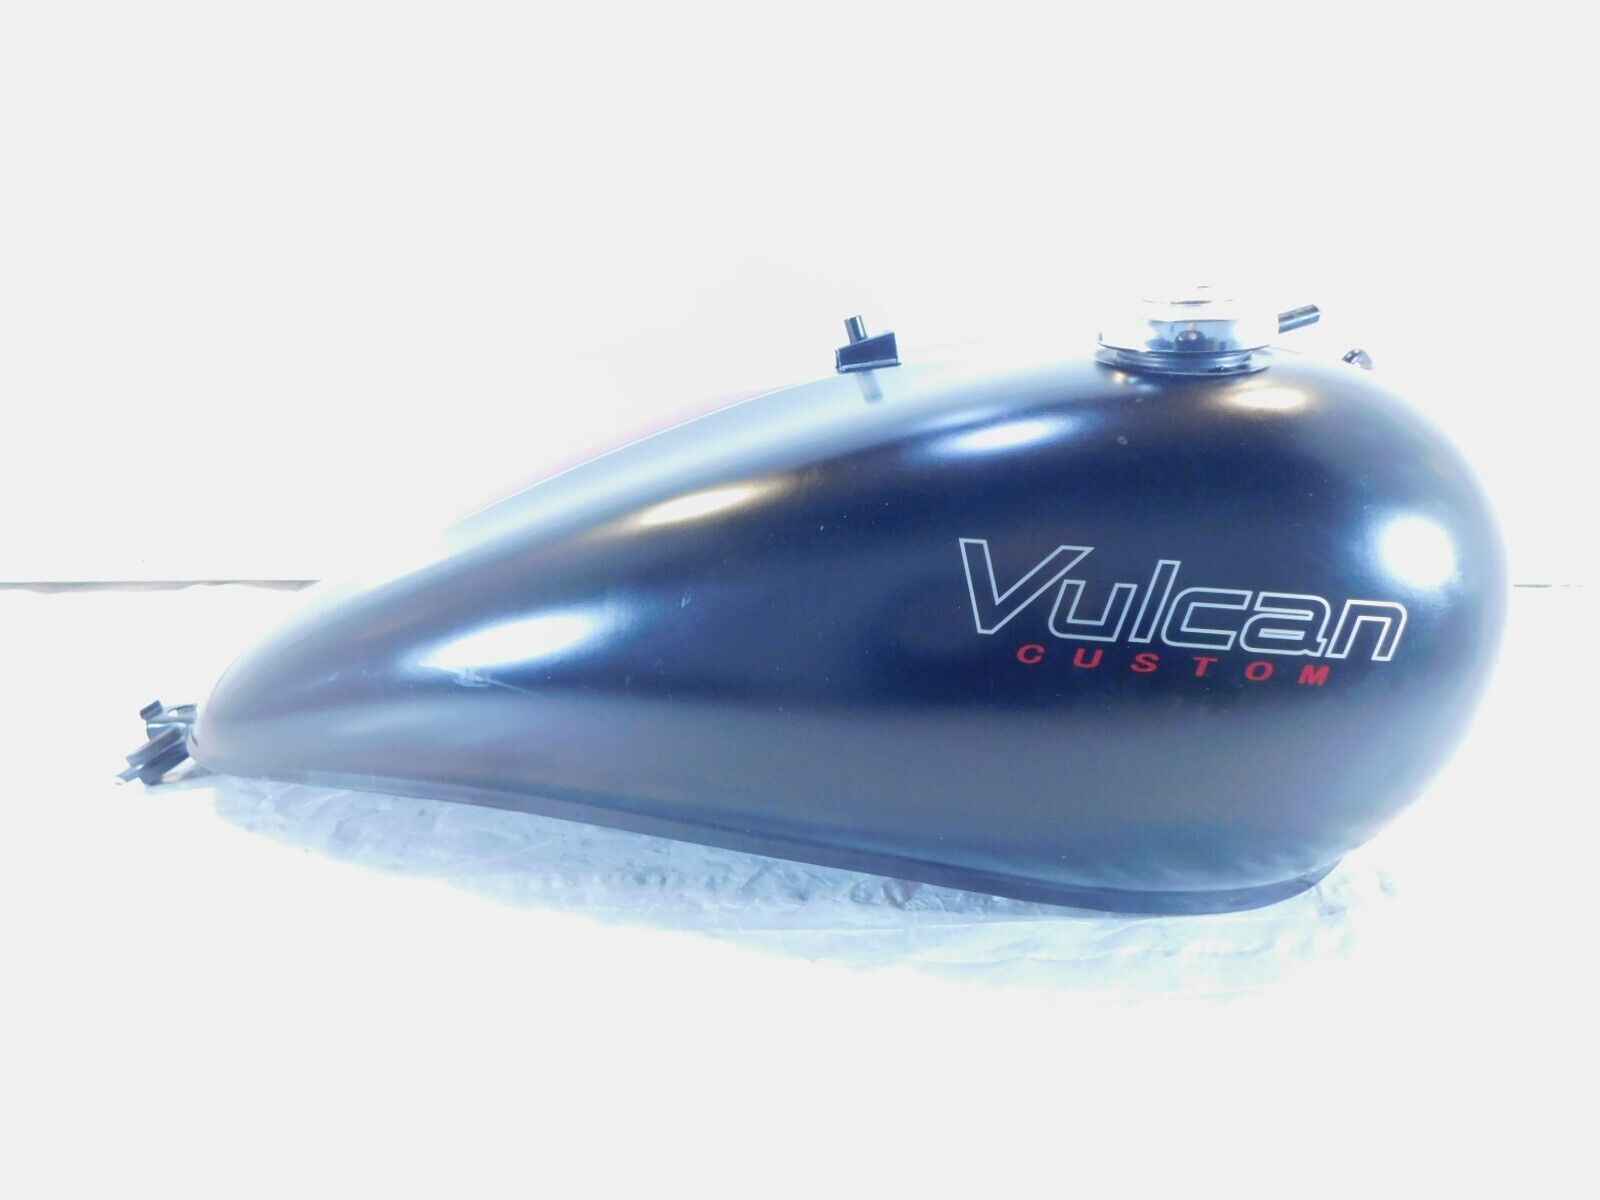 06-16 Kawasaki Vulcan VN900 Custom Fuel Tank